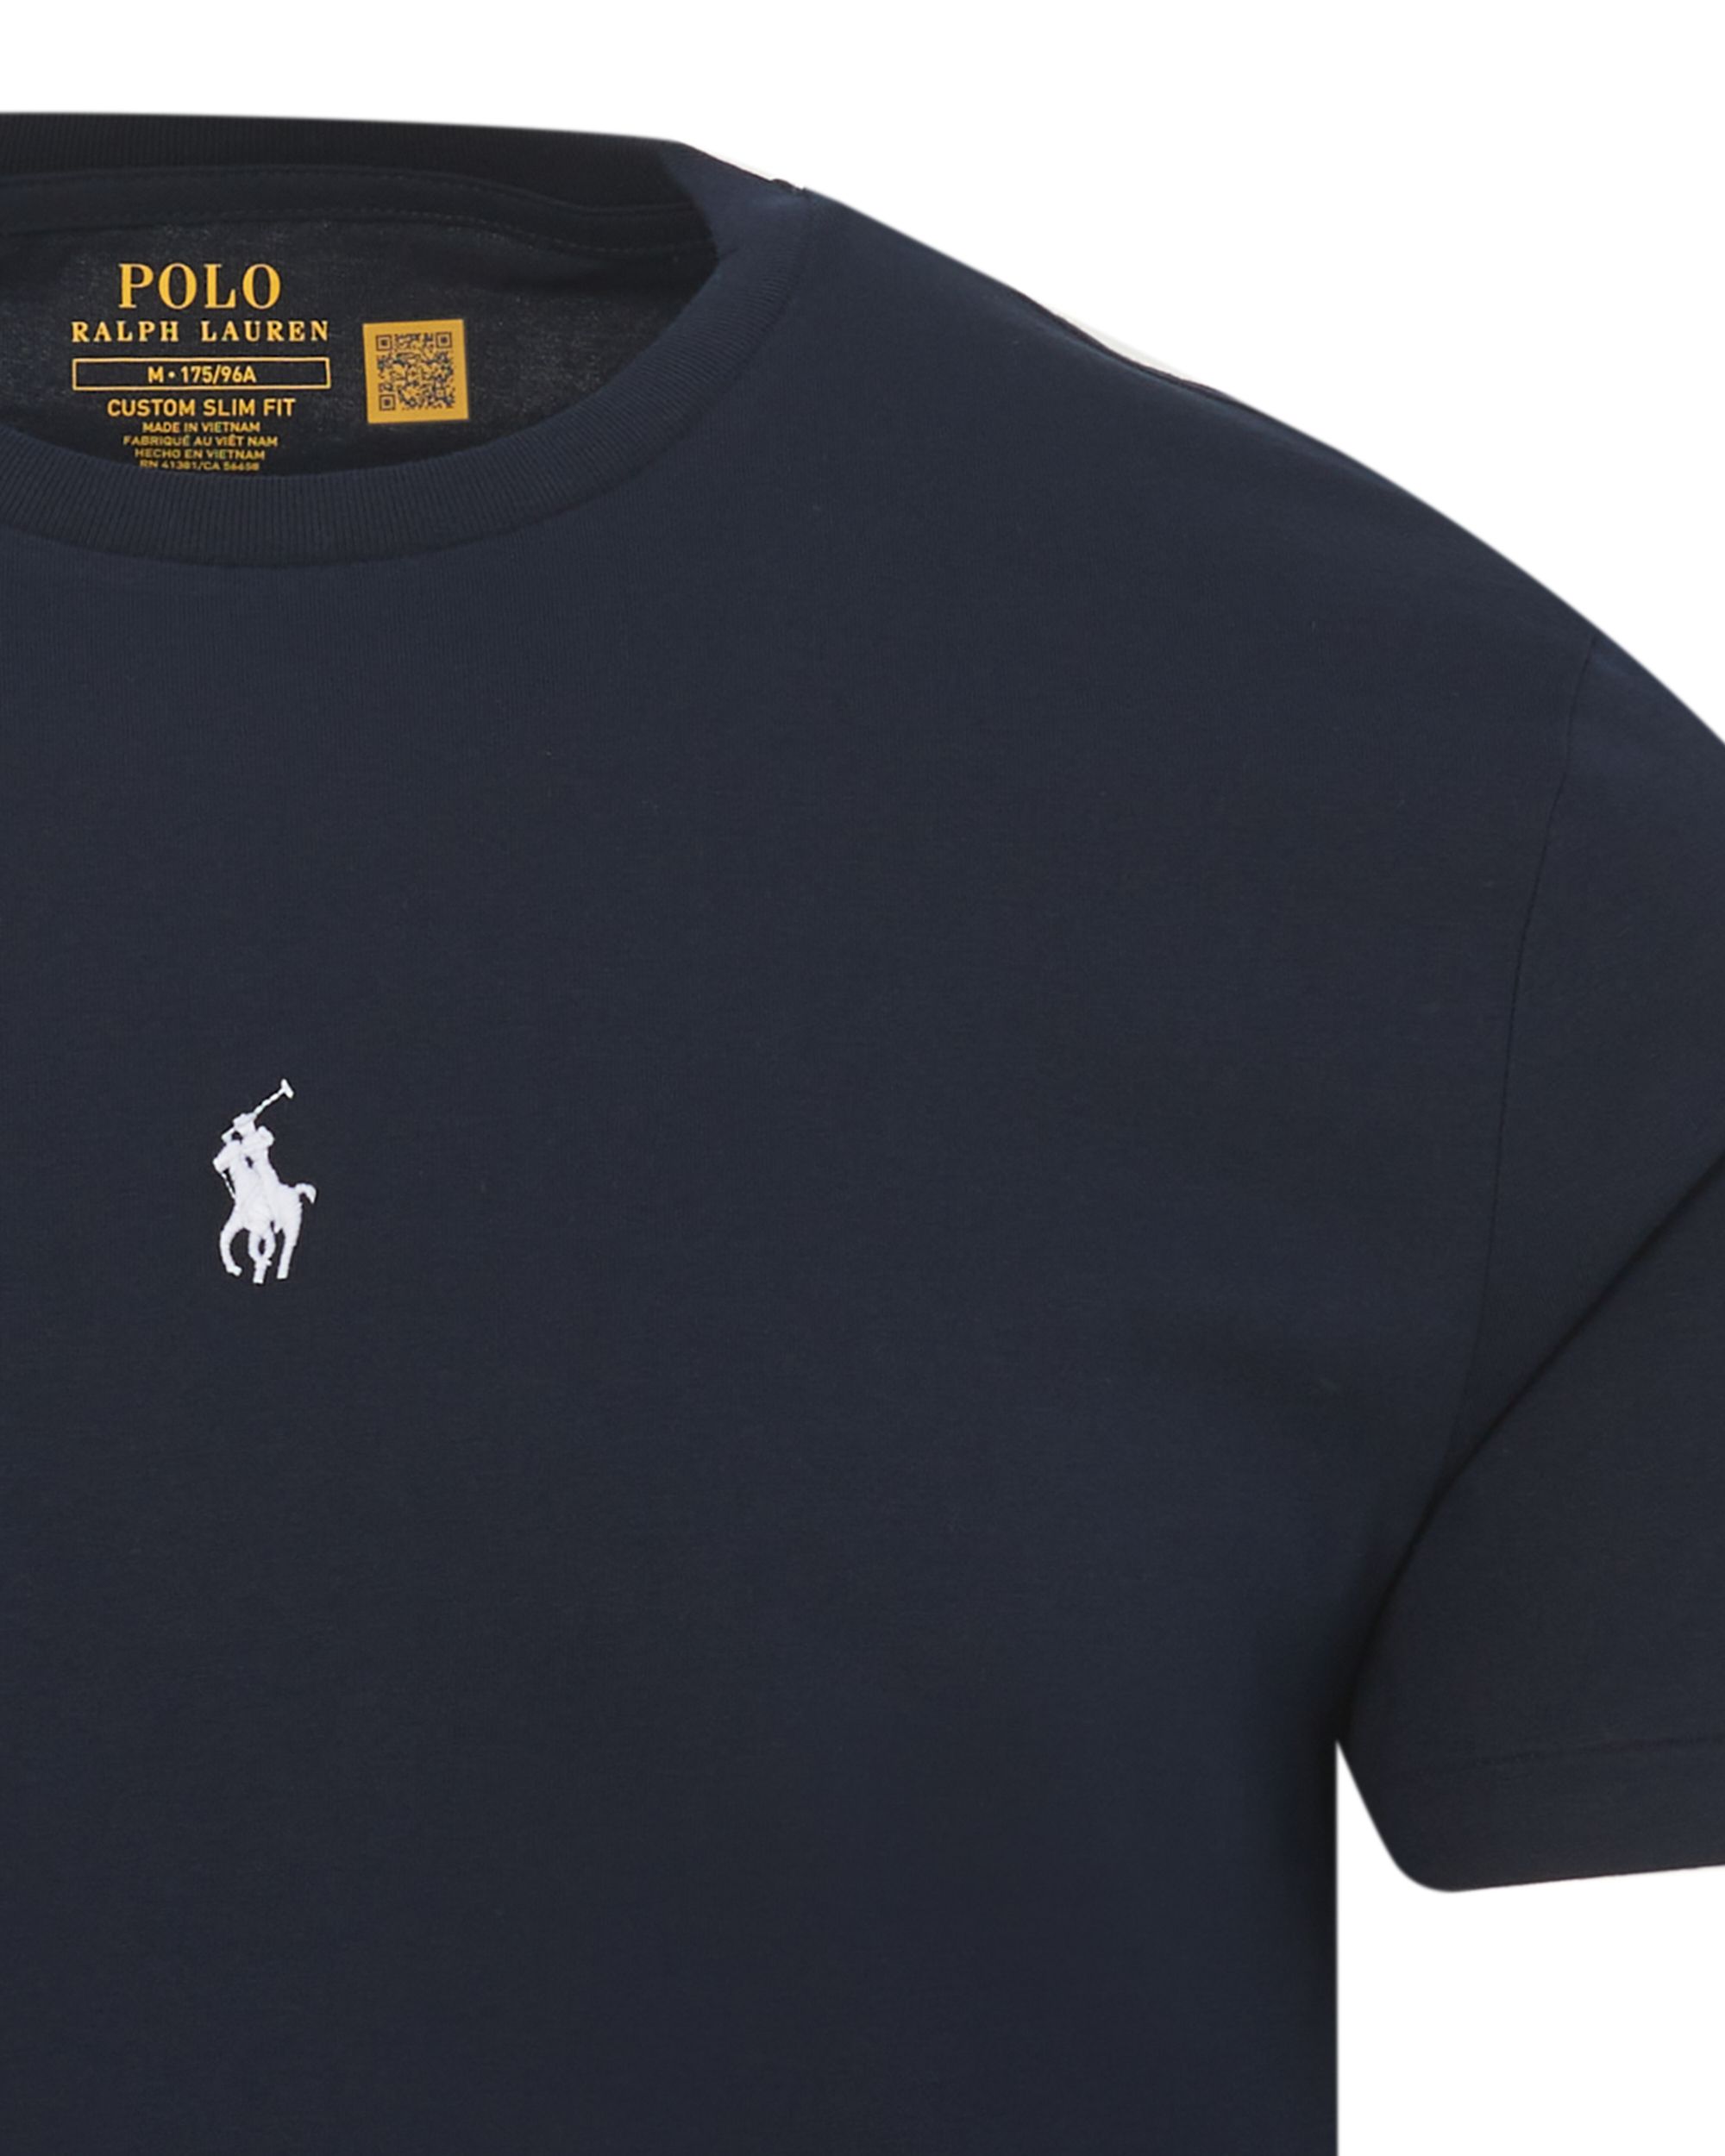 Polo Ralph Lauren T-shirt KM Donker blauw 083476-001-L